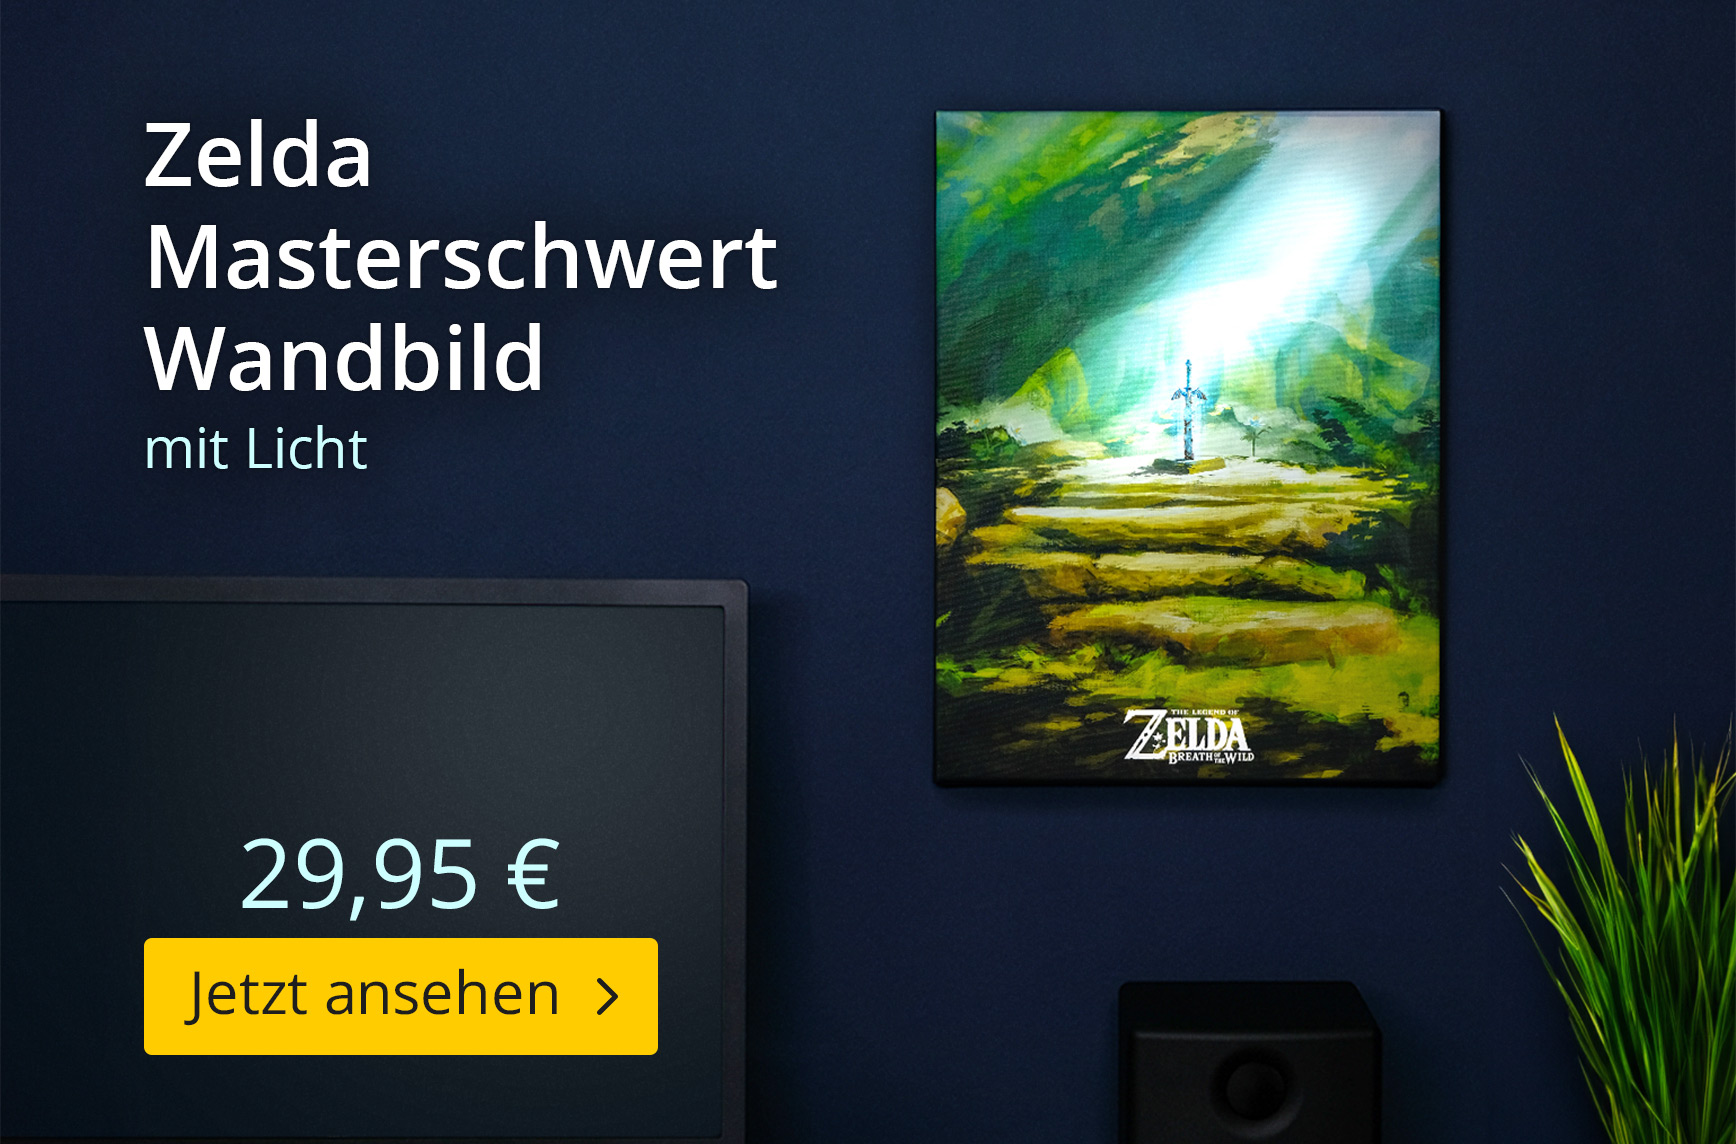 Zelda - Masterschwert Wandbild mit Licht - 29,95€